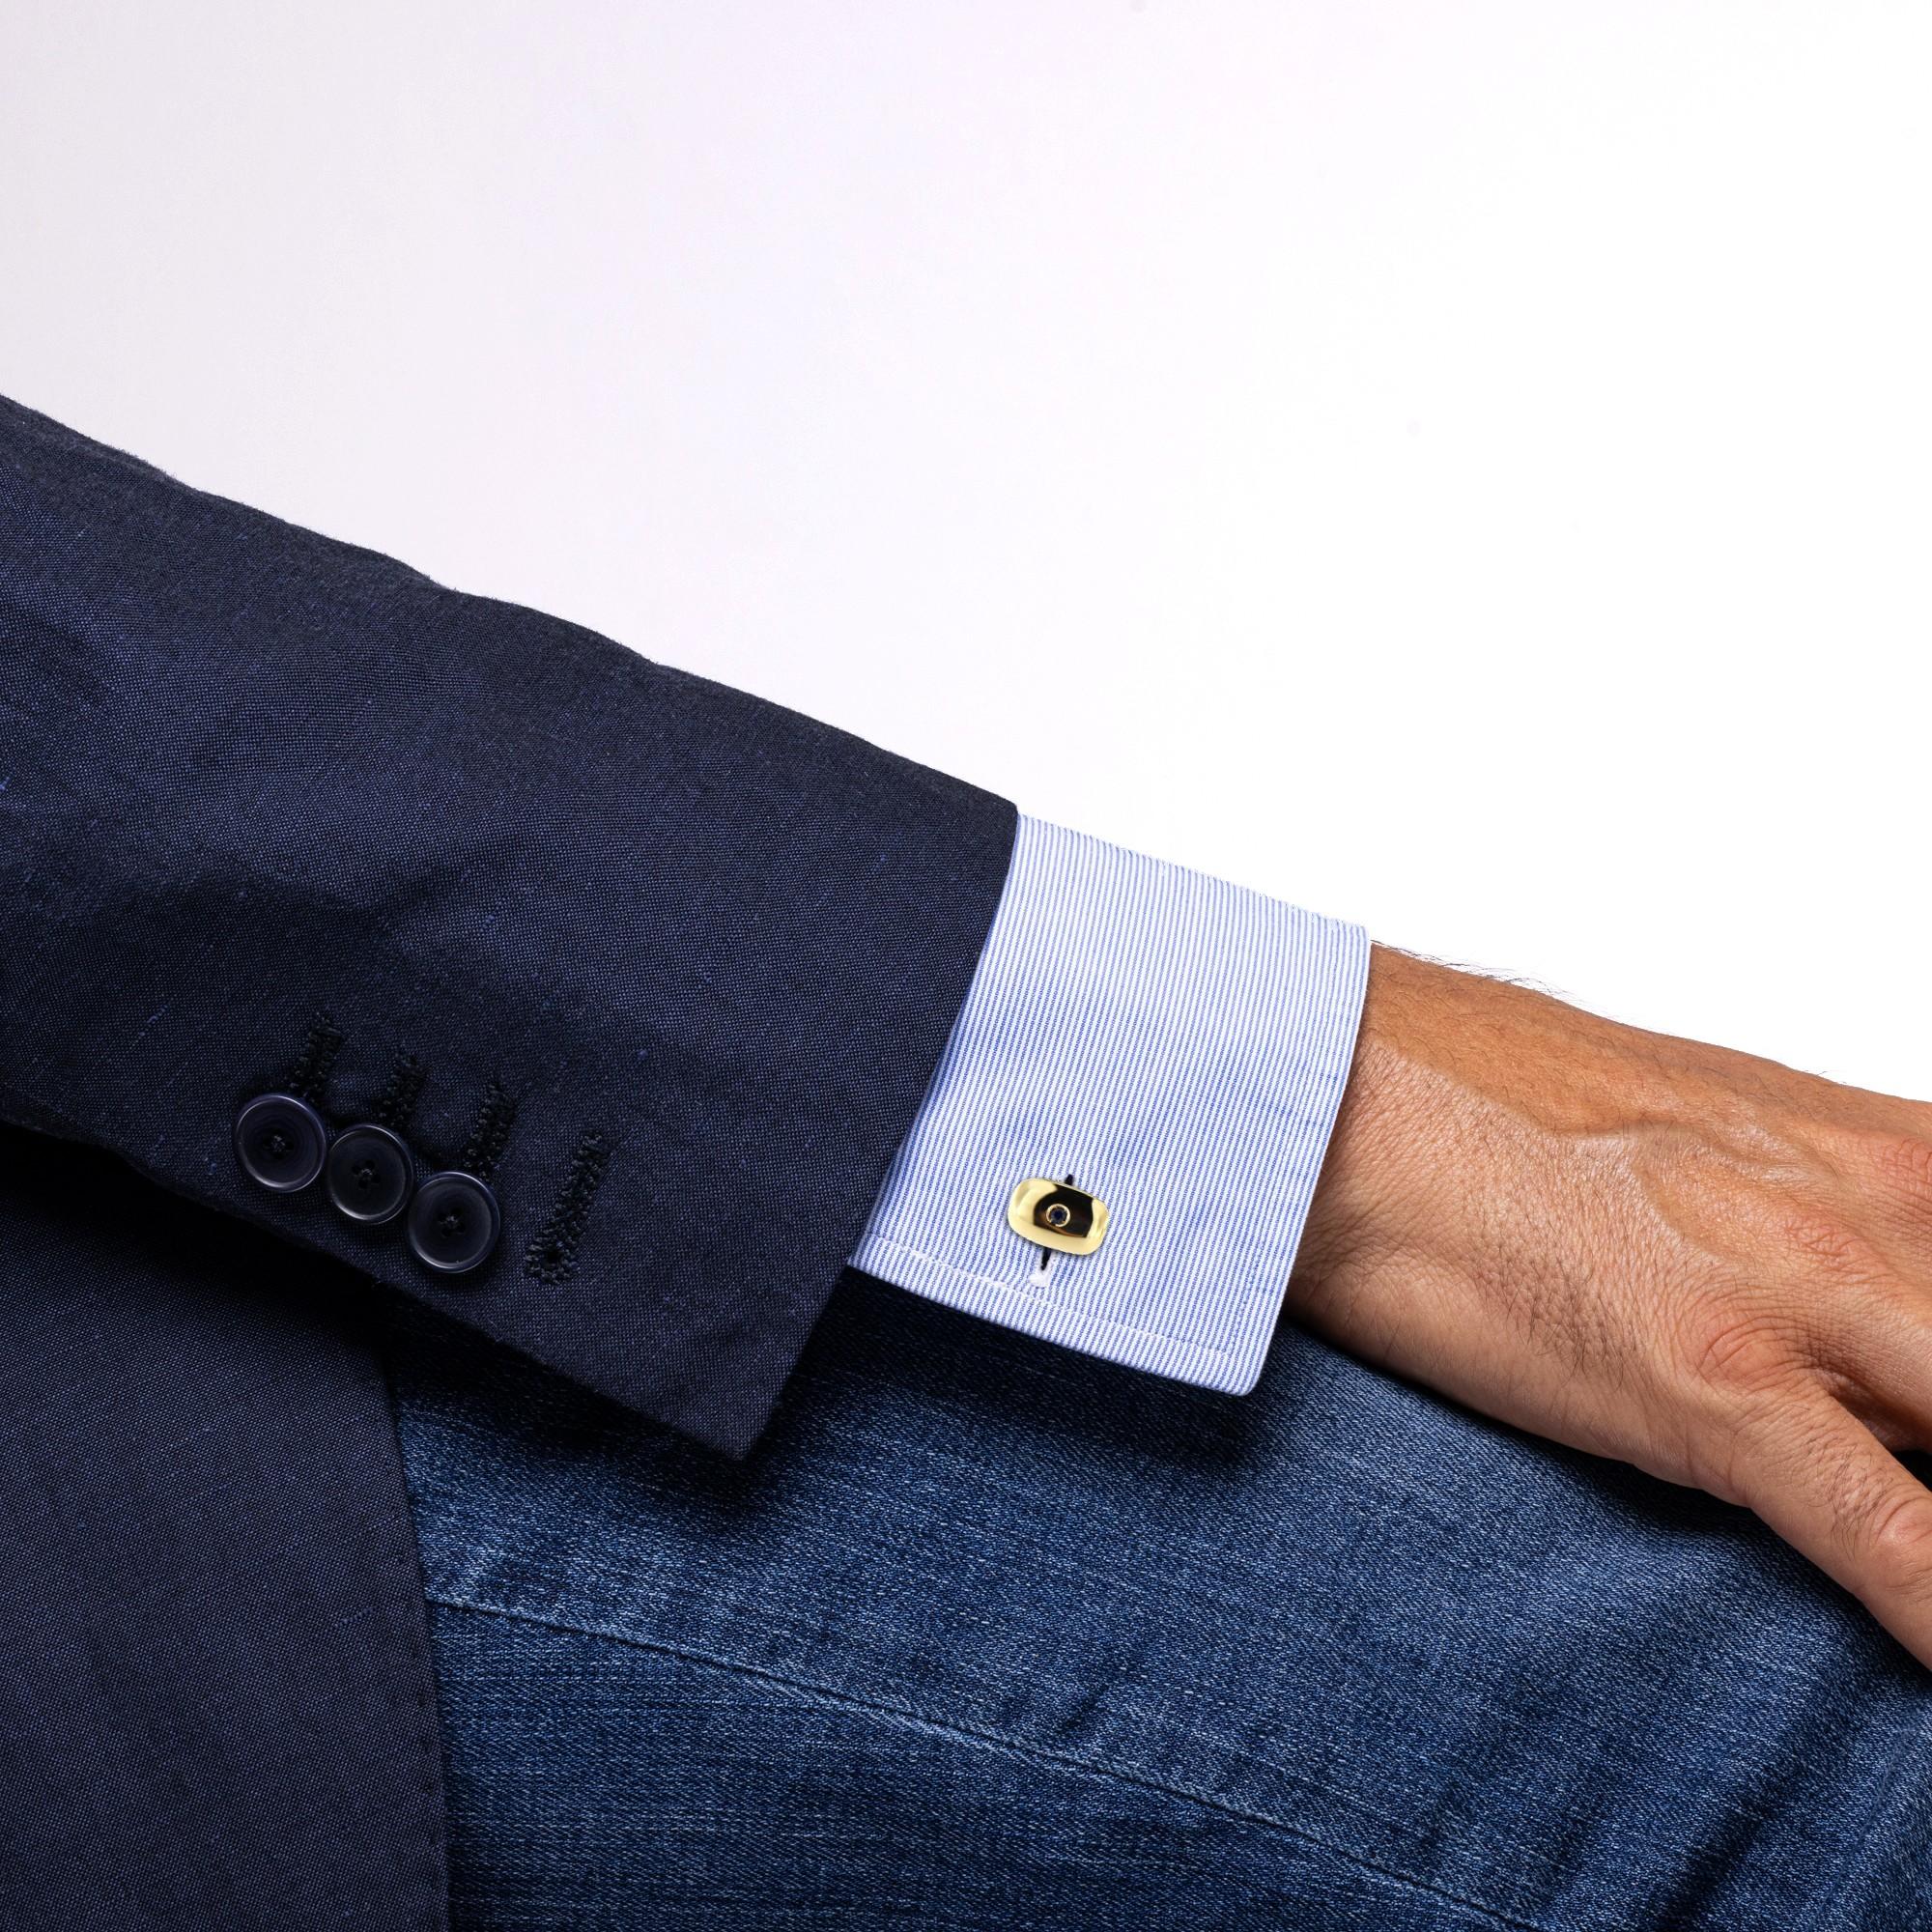 Collection de boutons de manchette Alex Jona en or jaune 18 carats, fabriqués à la main en Italie, sertis de saphirs bleus d'un poids de 0,58 carat. 

Les boutons de manchette Alex Jona se distinguent, non seulement par leur design particulier et